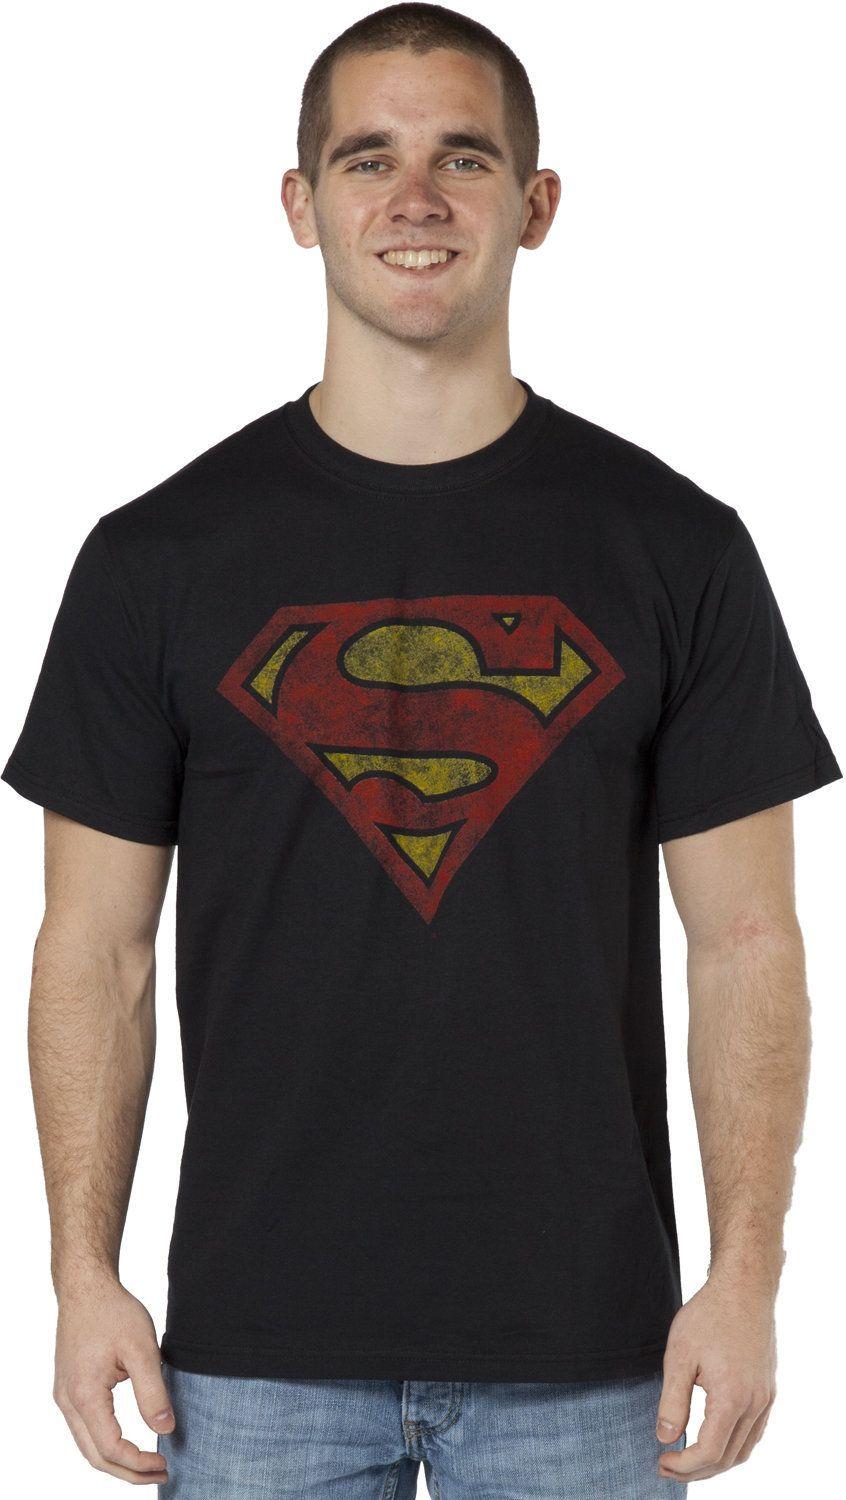 Distressed Superman Logo - Distressed Superman Logo Shirt. superman shirts. Superman